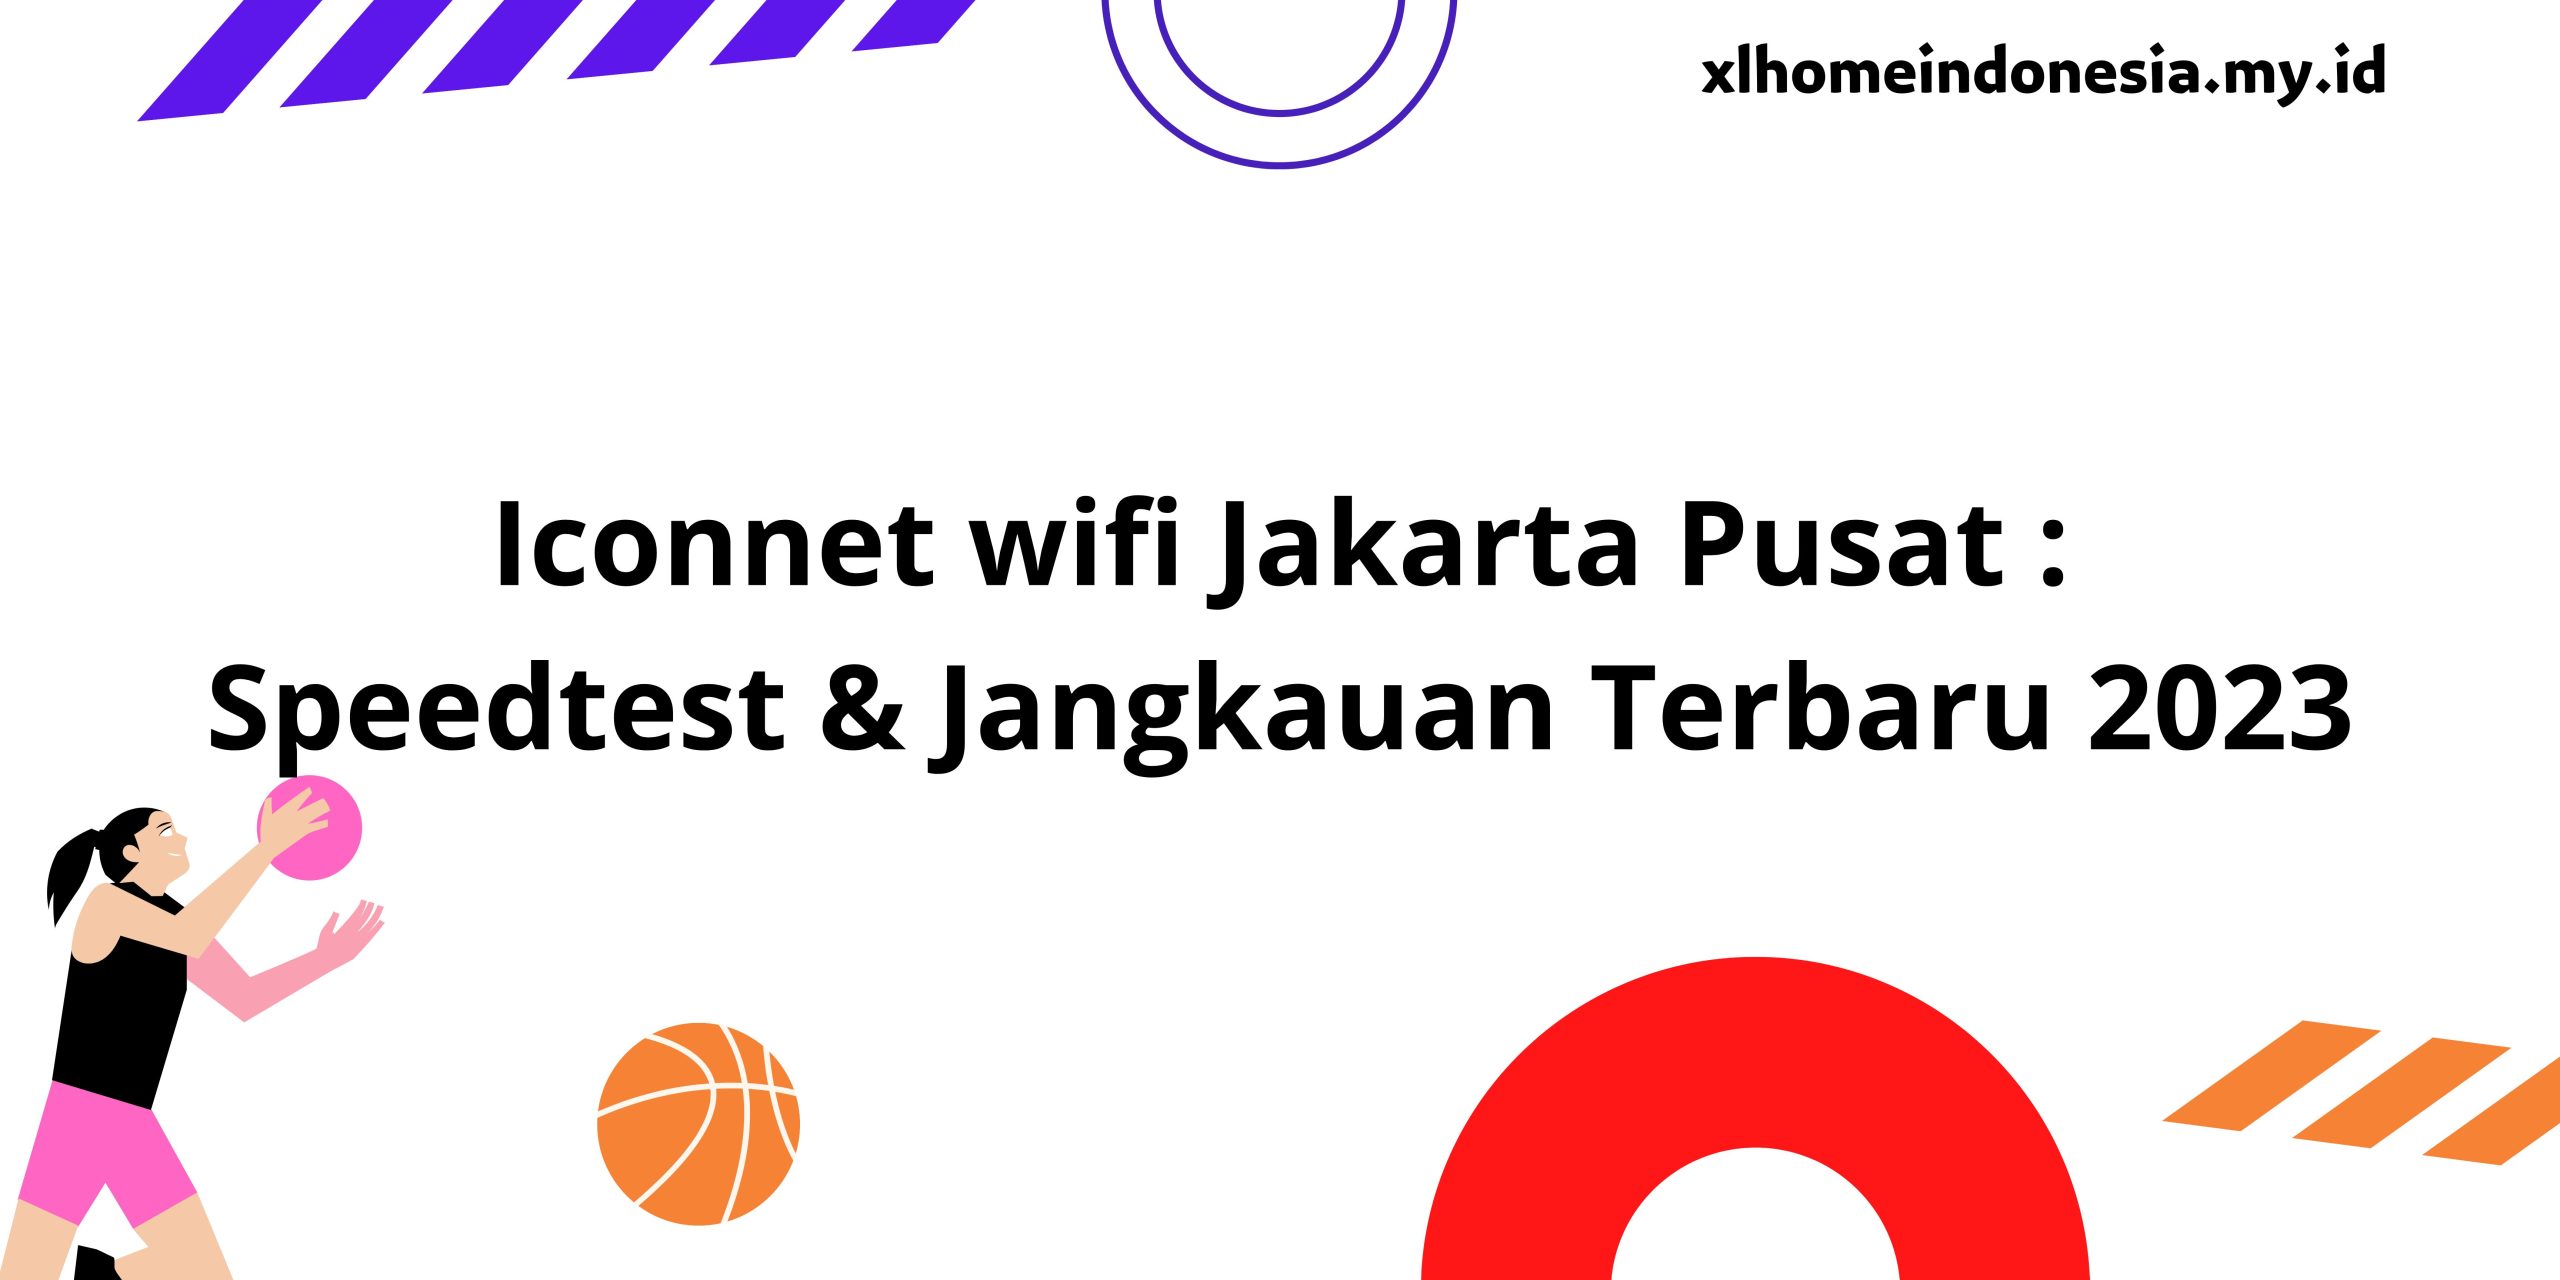 Iconnet wifi Jakarta Pusat